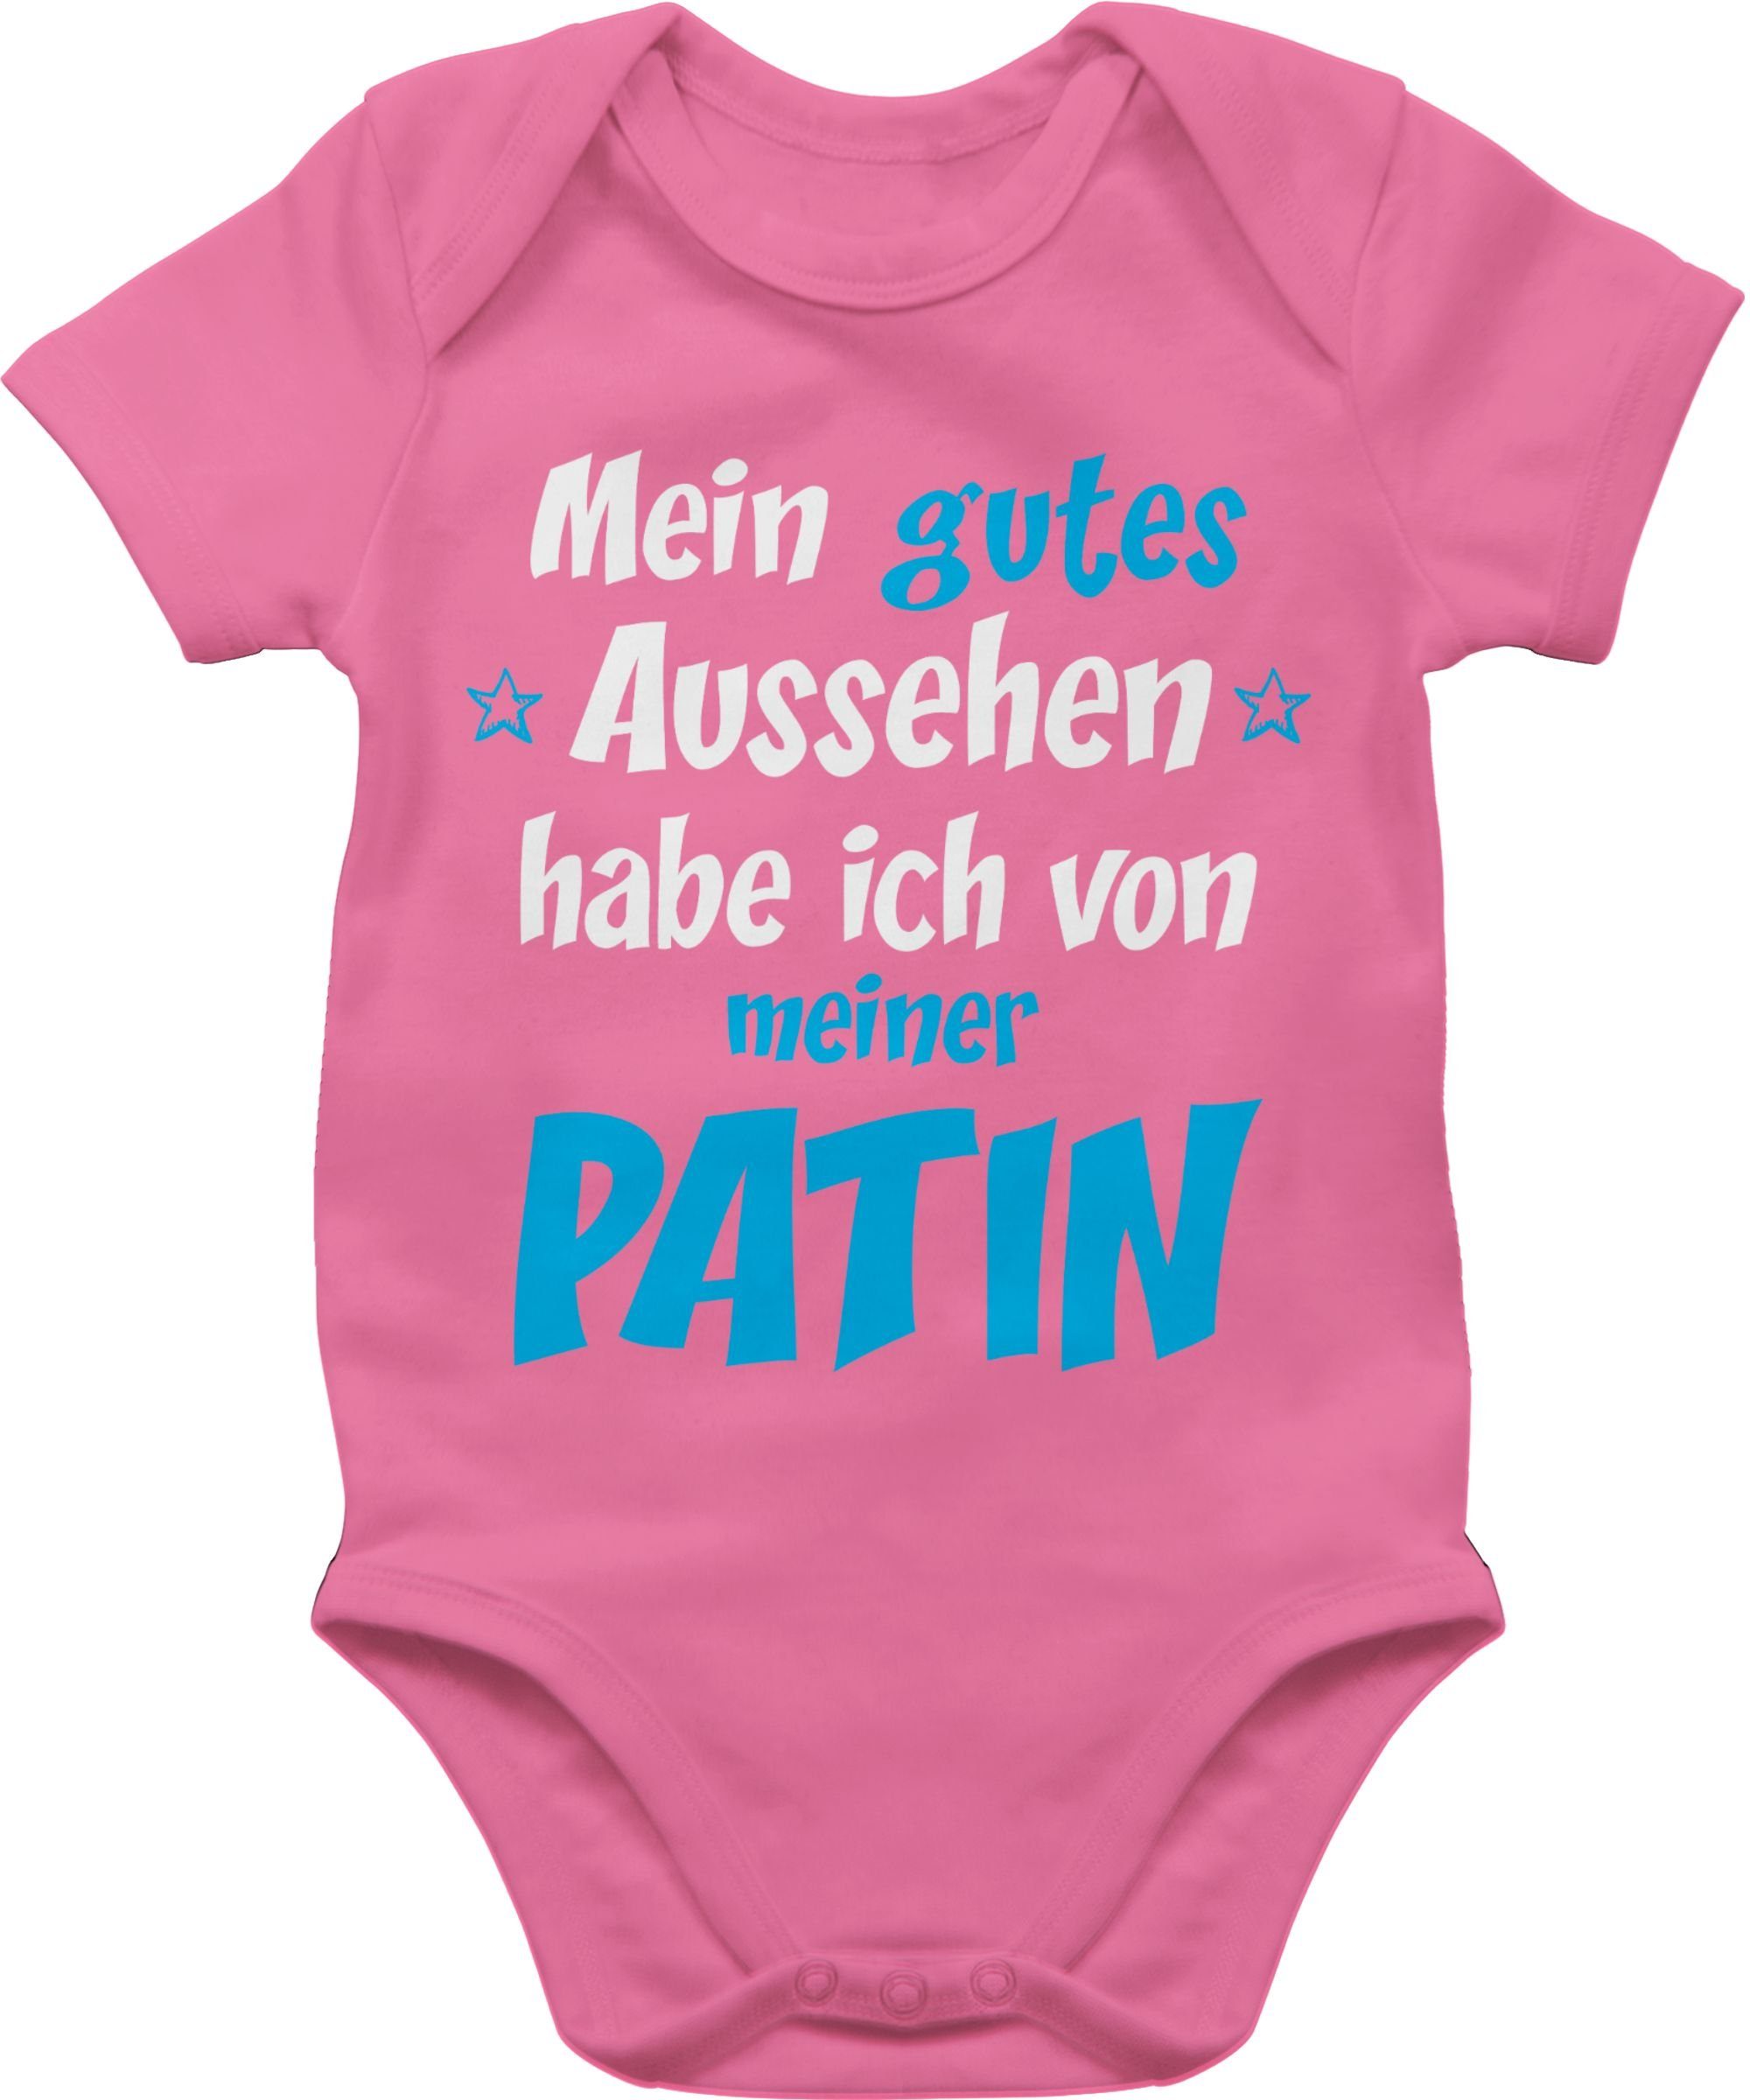 Shirtracer Baby Pink - Patentante Shirtbody Junge Patin 2 Aussehen blau/weiß Gutes